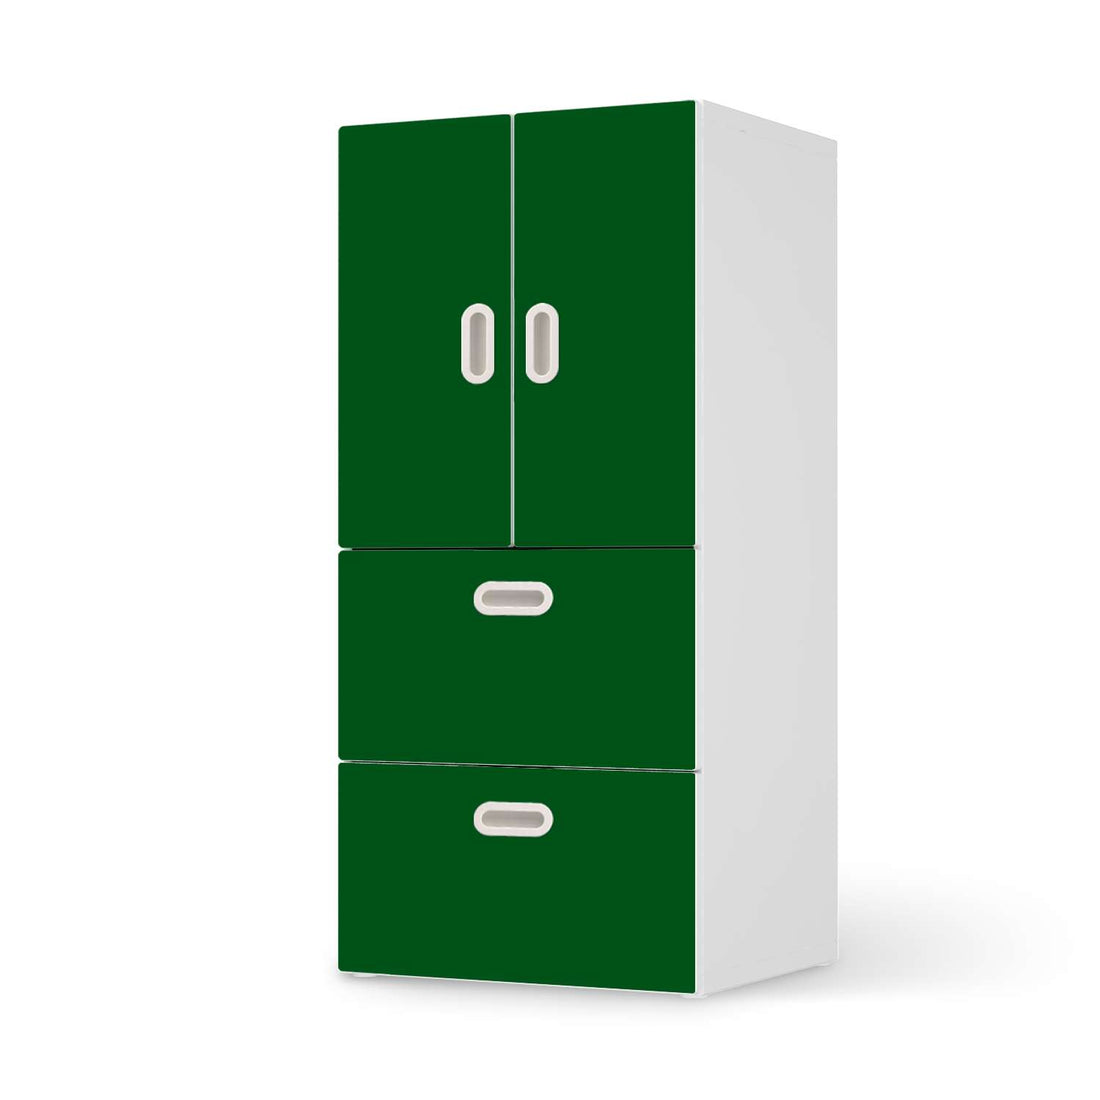 Möbelfolie Grün Dark - IKEA Stuva / Fritids kombiniert - 2 Schubladen und 2 kleine Türen  - weiss